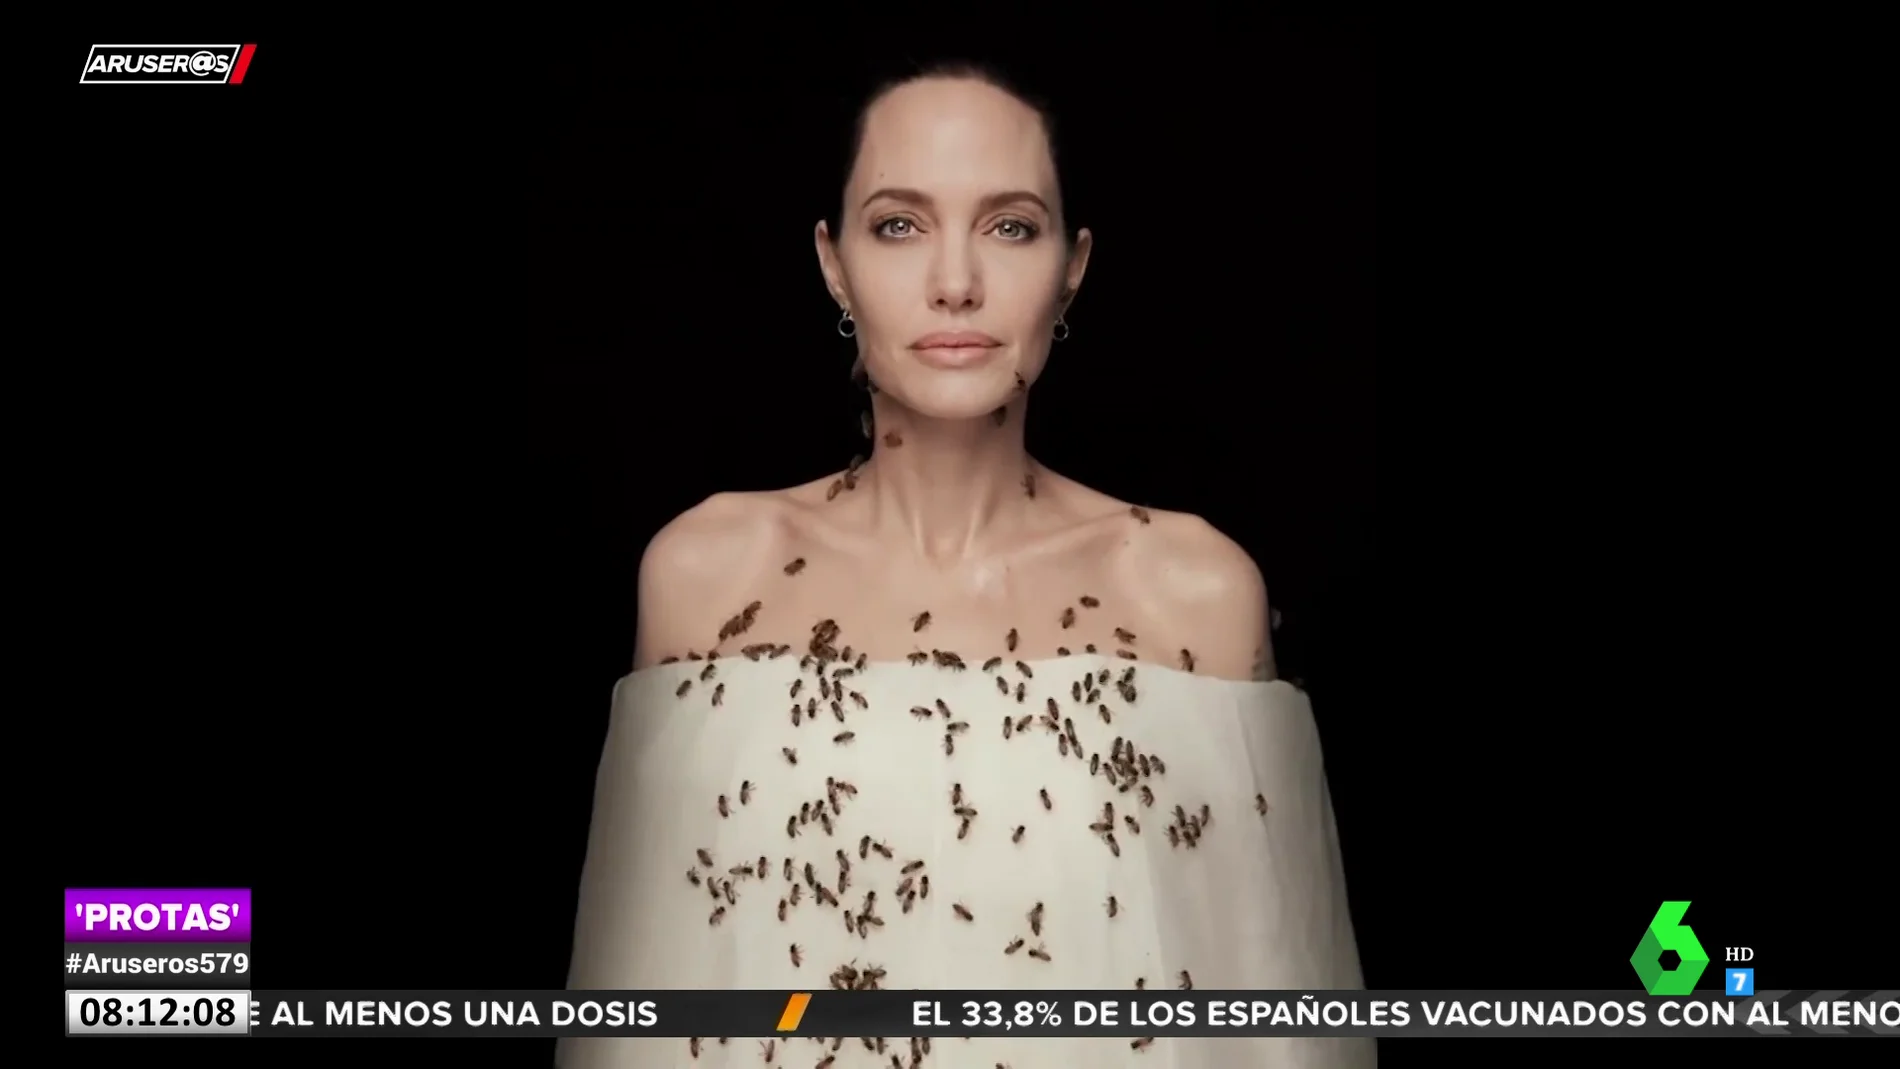 El motivo por el que Angelina Jolie ha cubierto su cuerpo de abejas